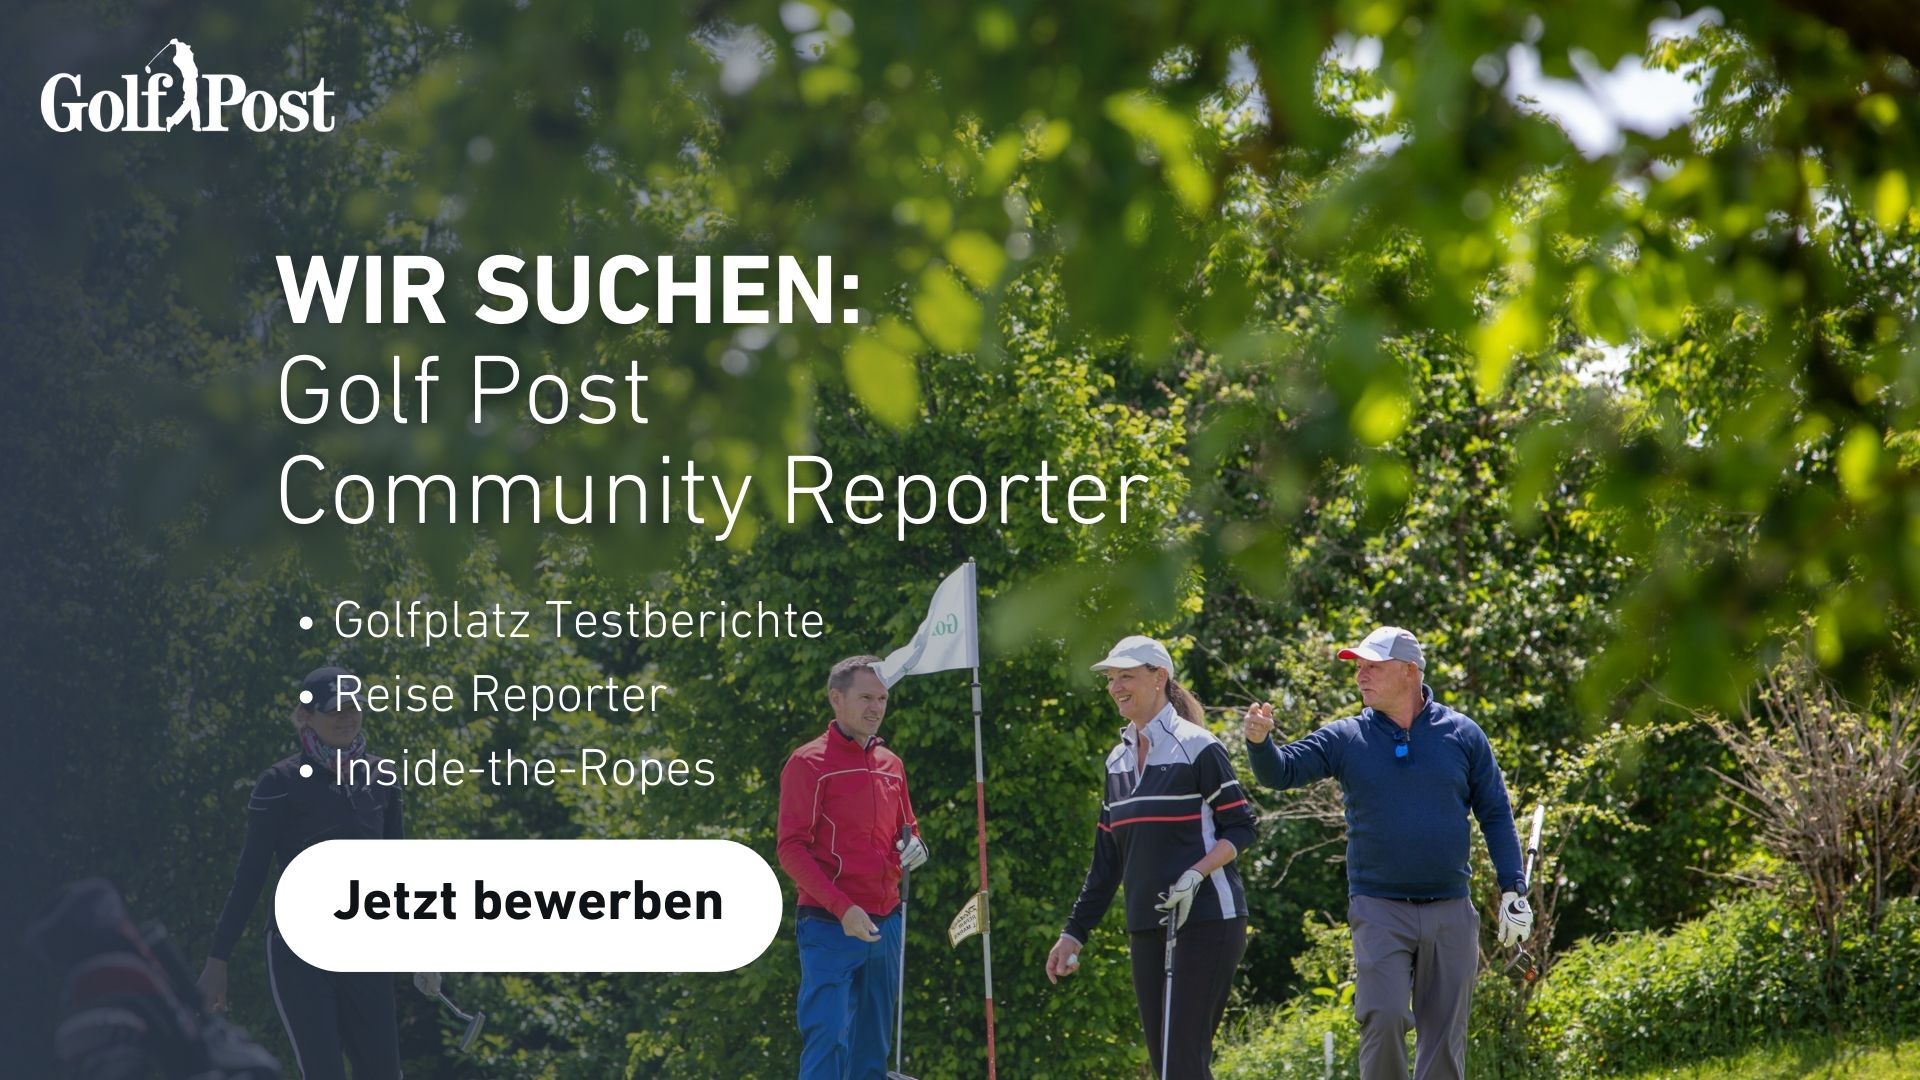 Wir suchen Dich Werde Golf Post Community Reporter